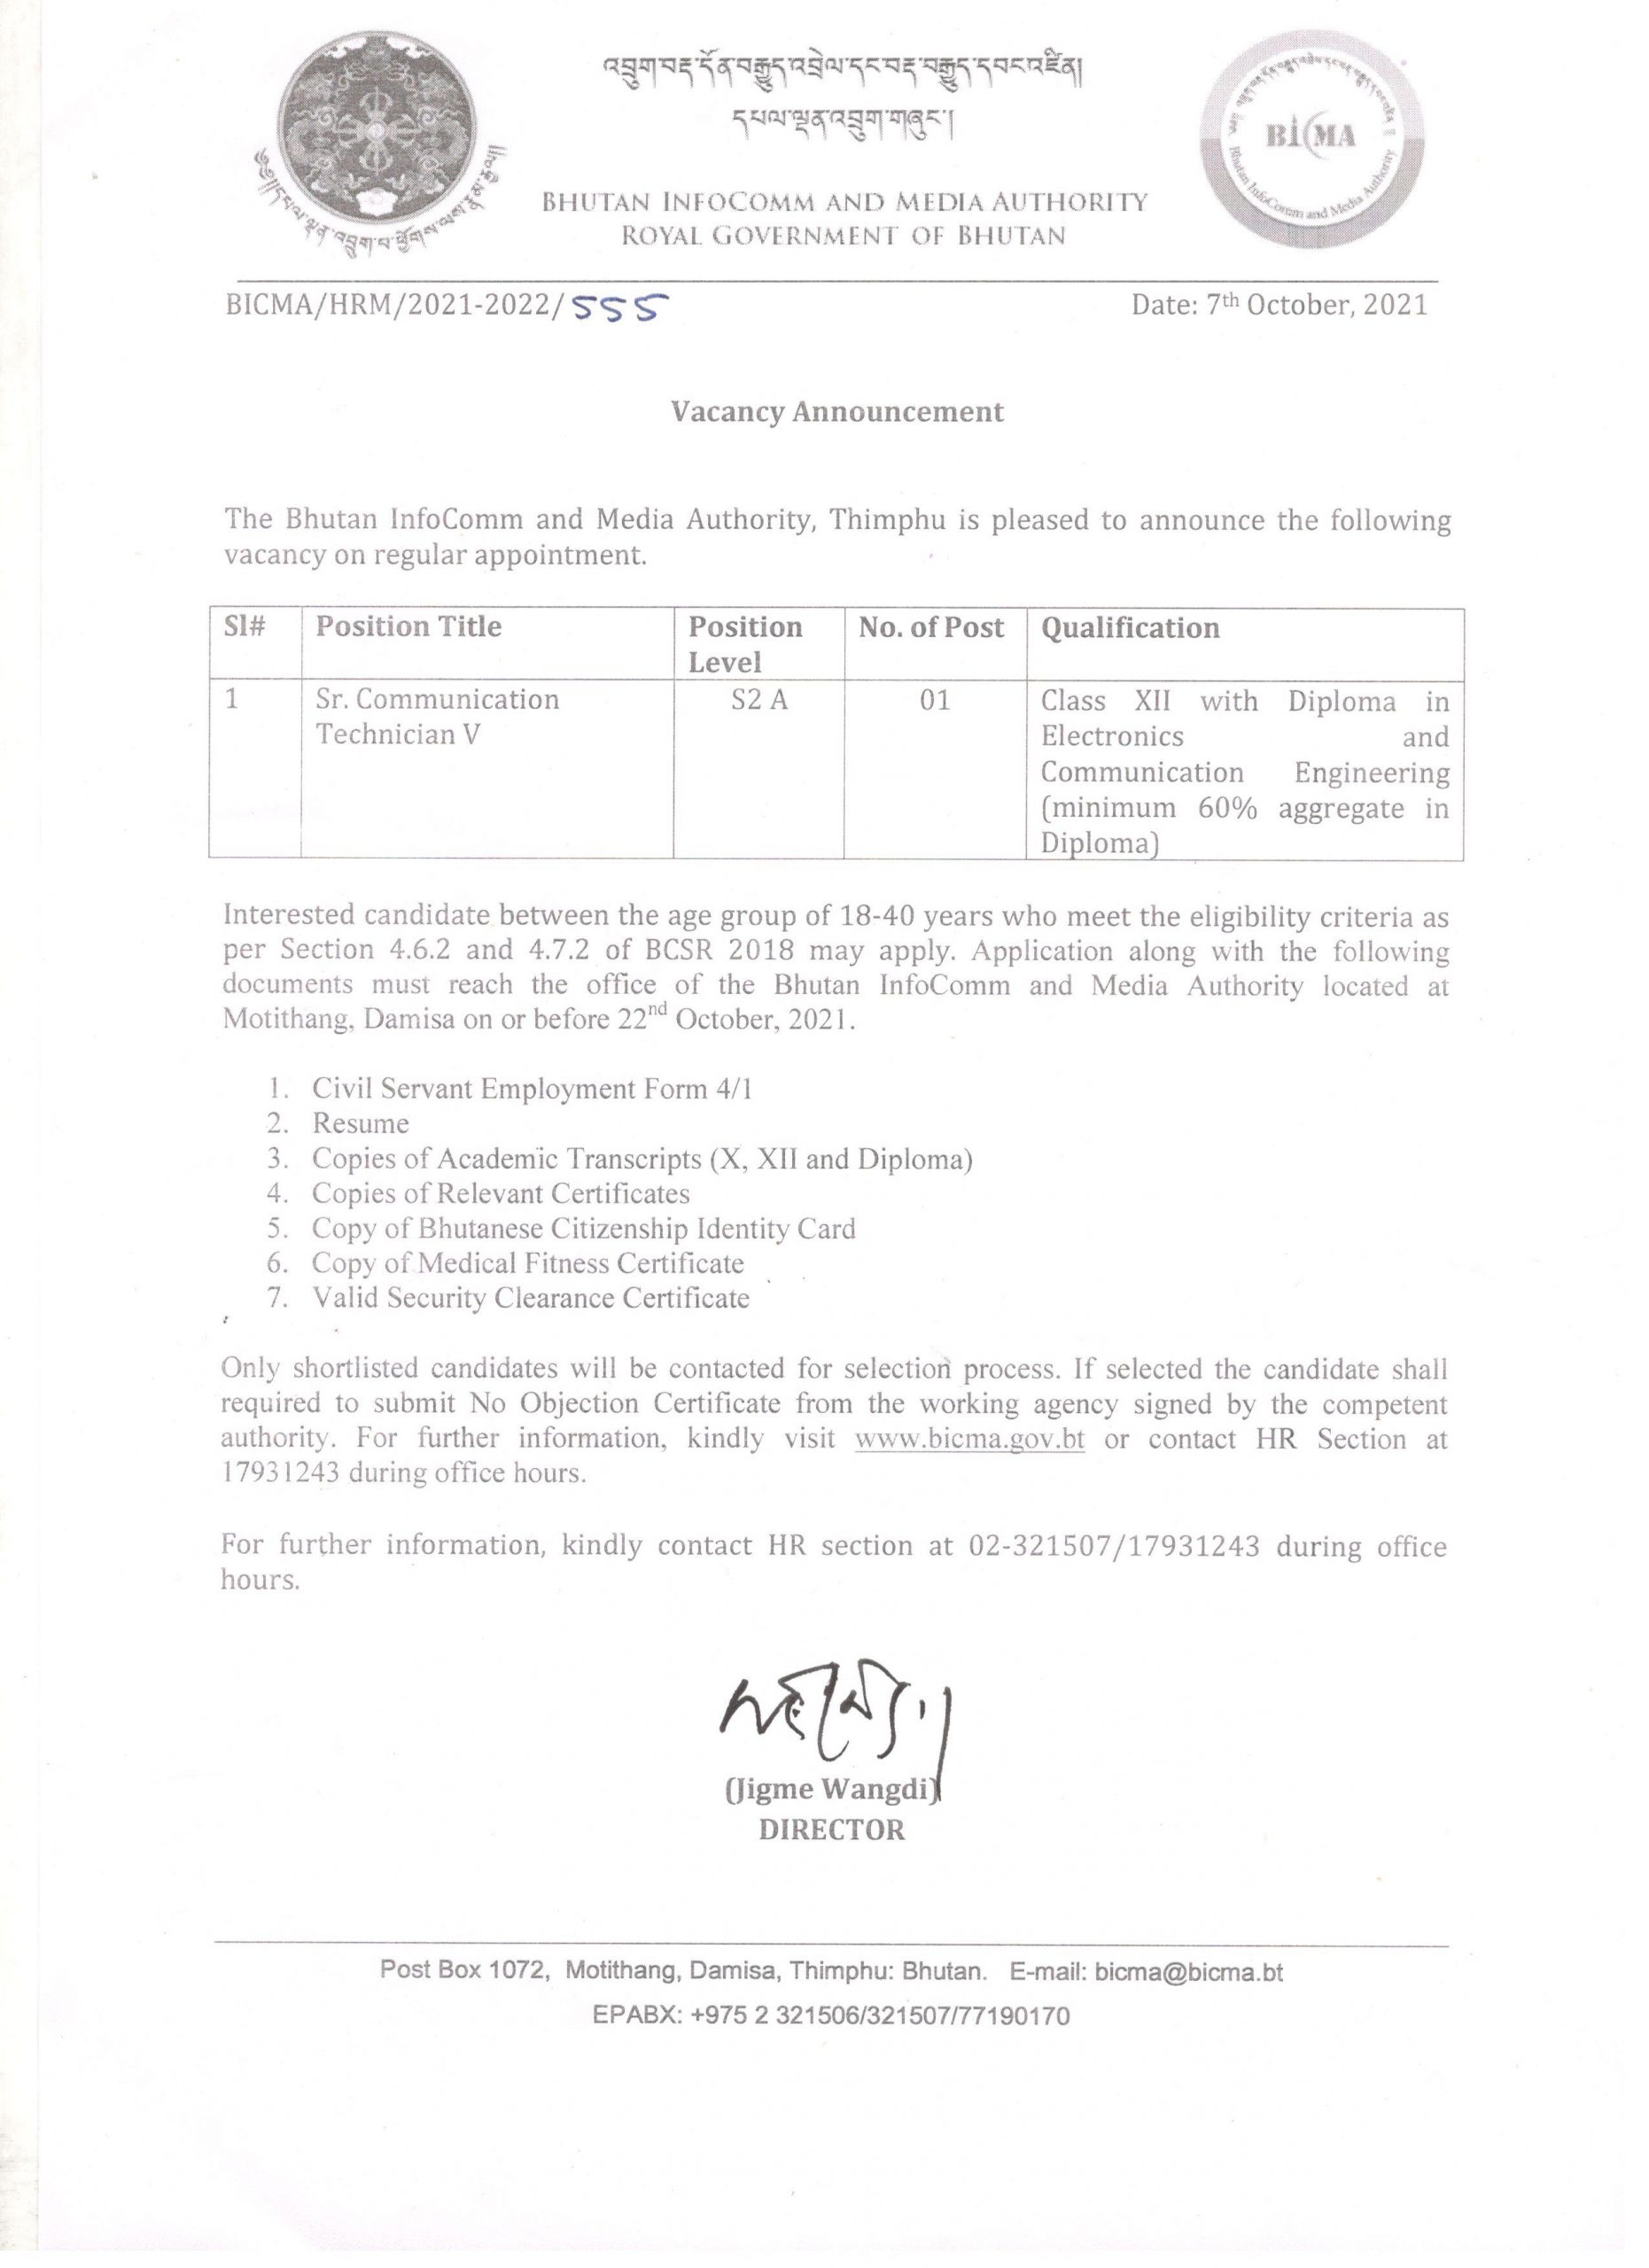 Vacancies Announcement Royal Civil Service Commission